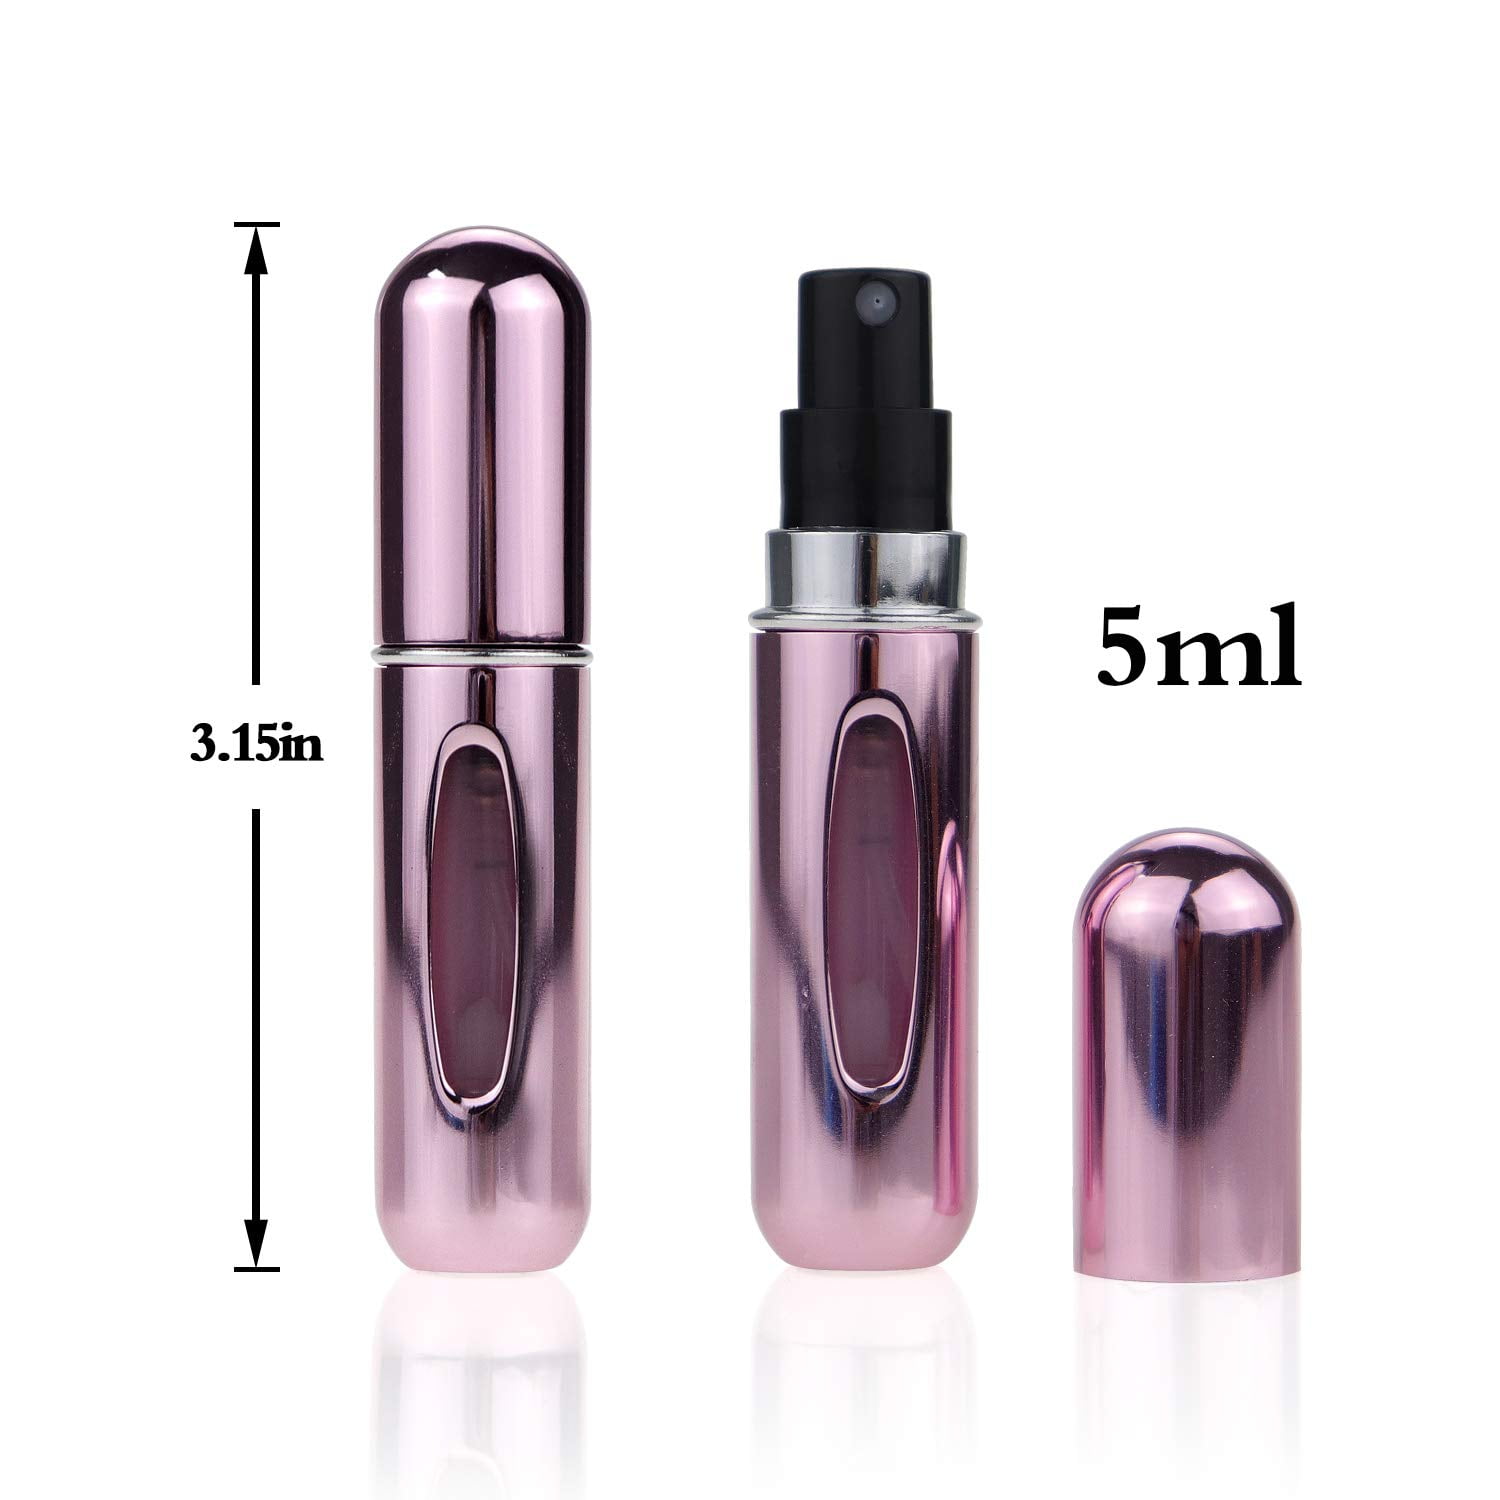 Portable Mini Refillable Perfume Atomizer BottleAtomizer Perfume